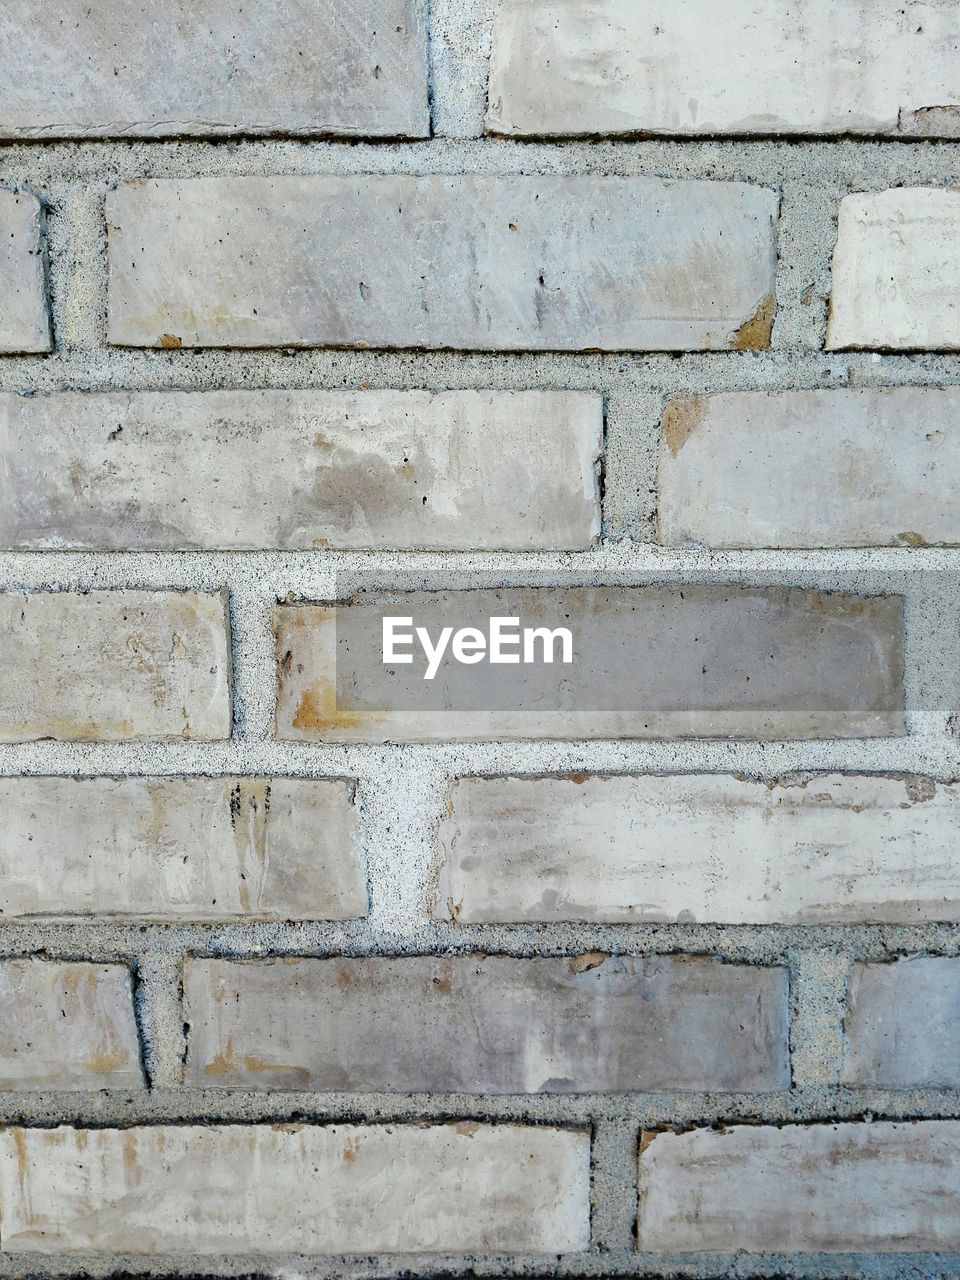 Full frame shot of white brick wall